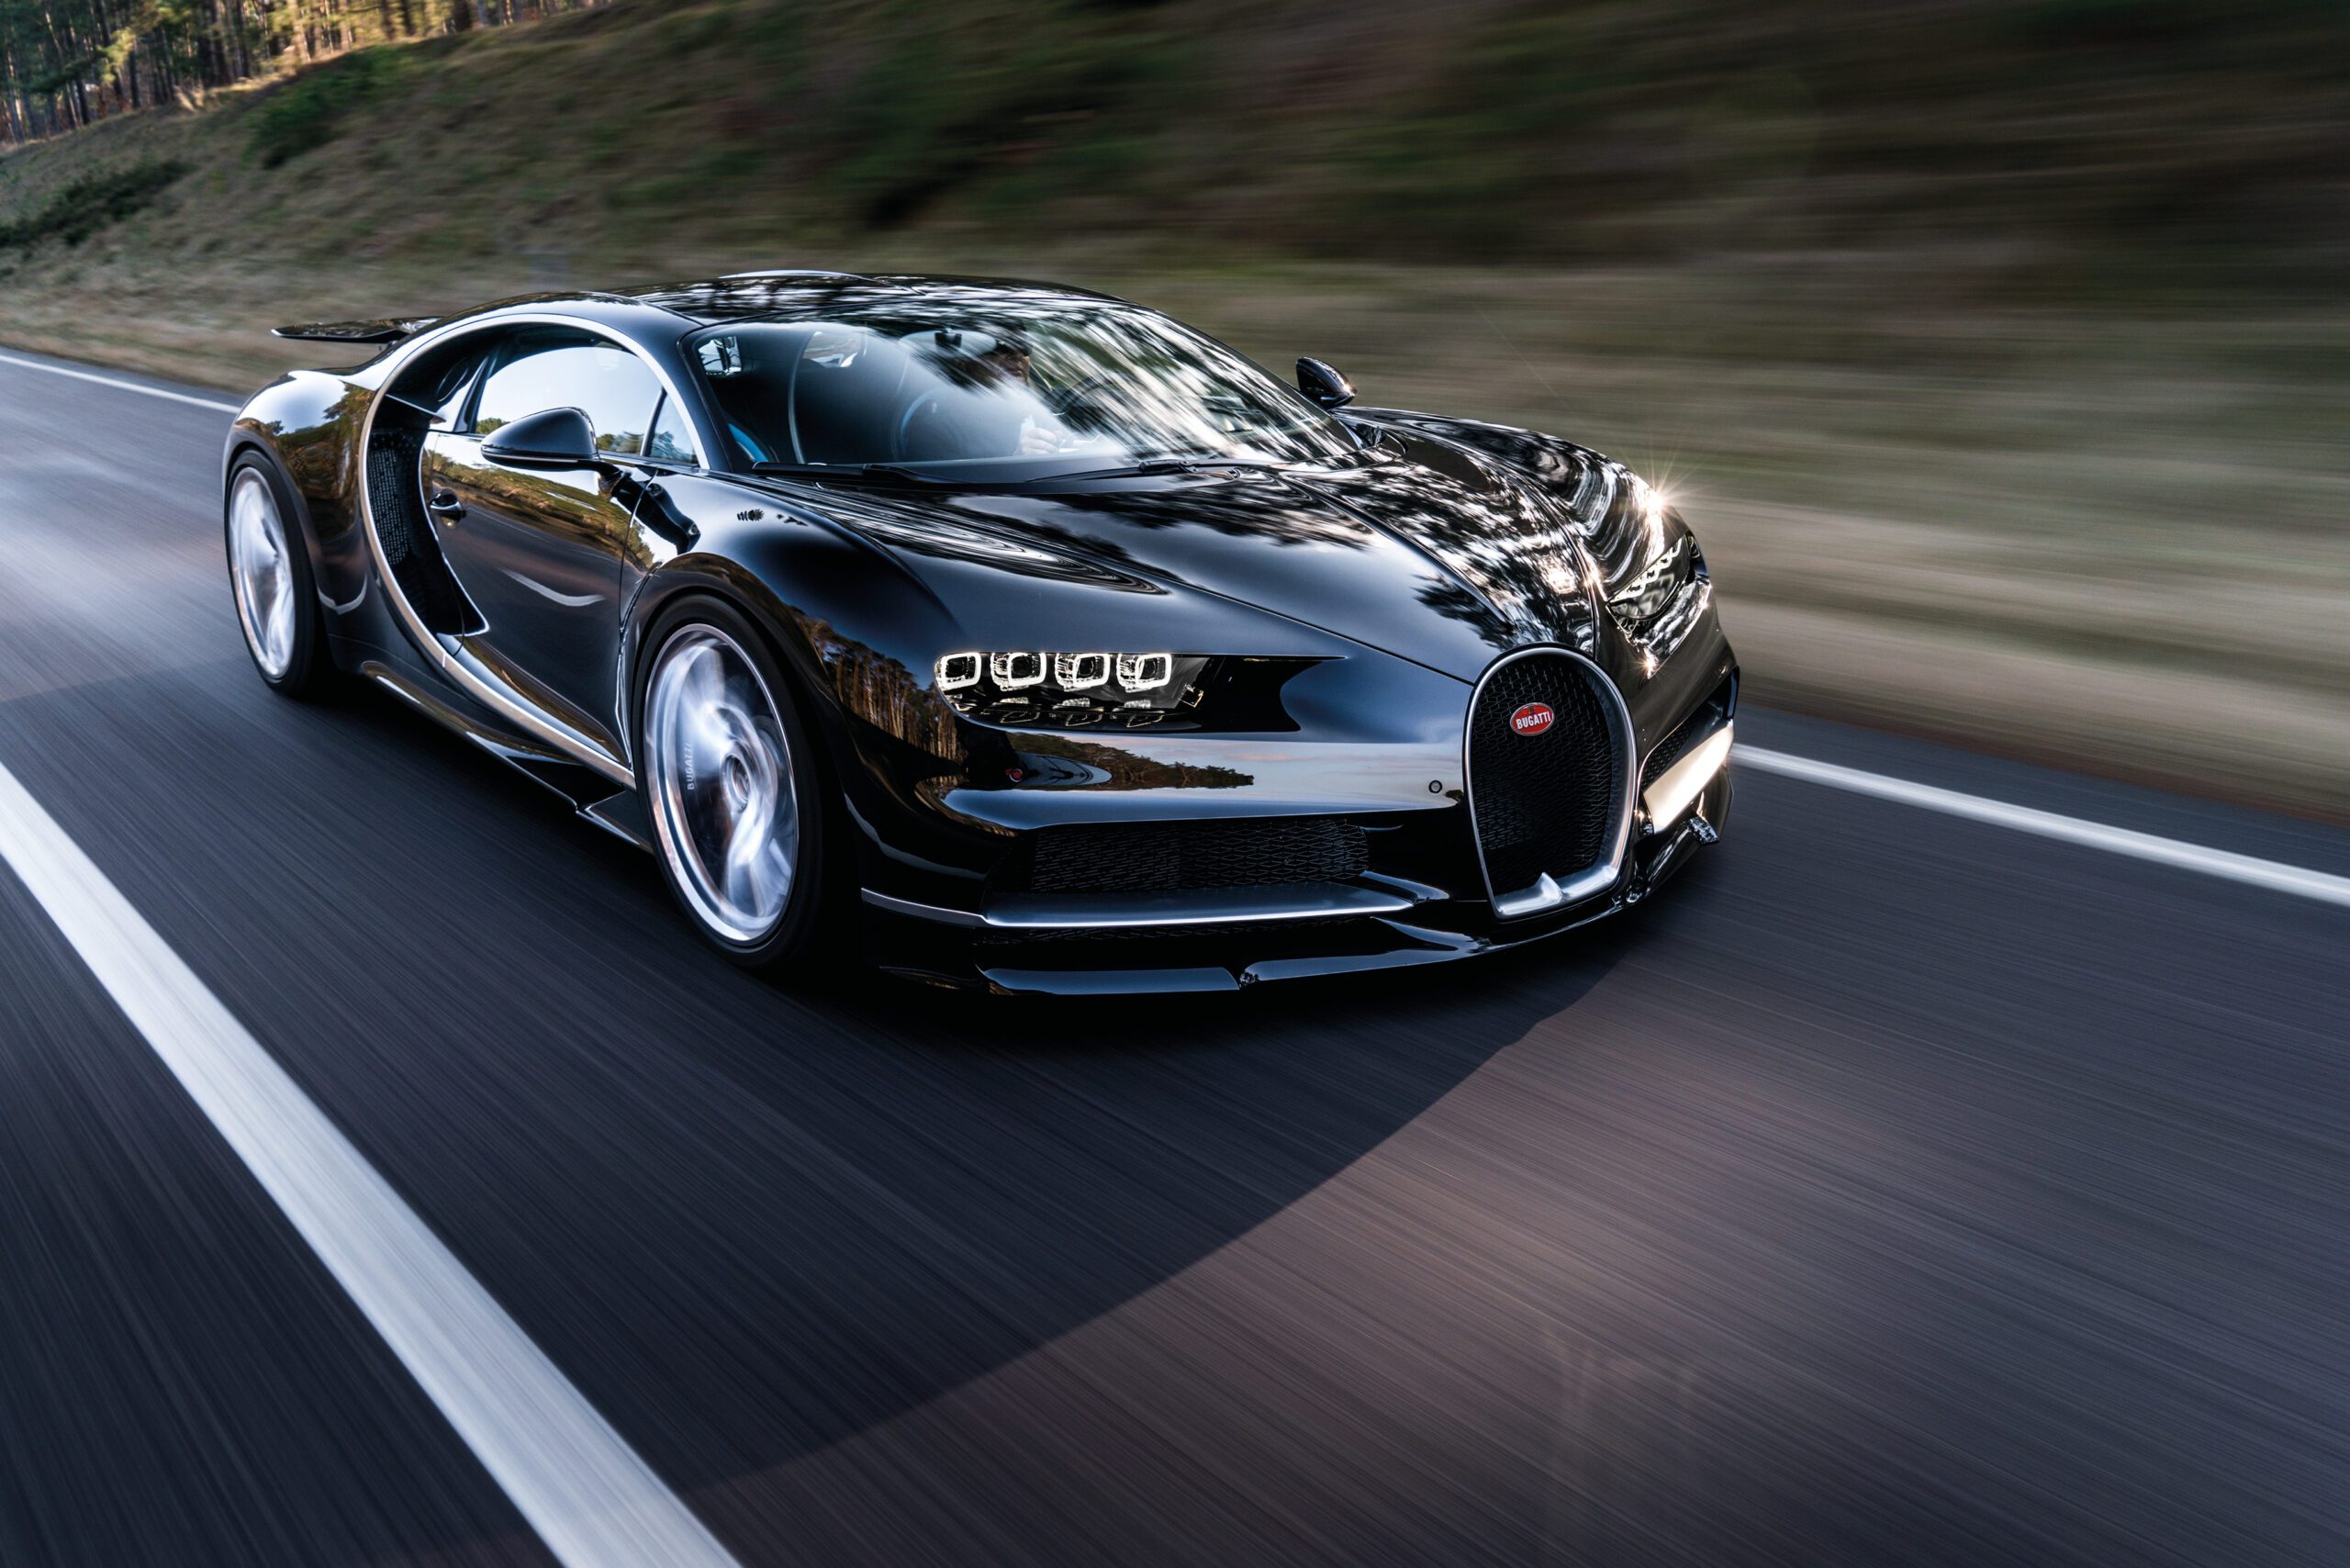 Bugatti Chiron Wallpapers Supercars net